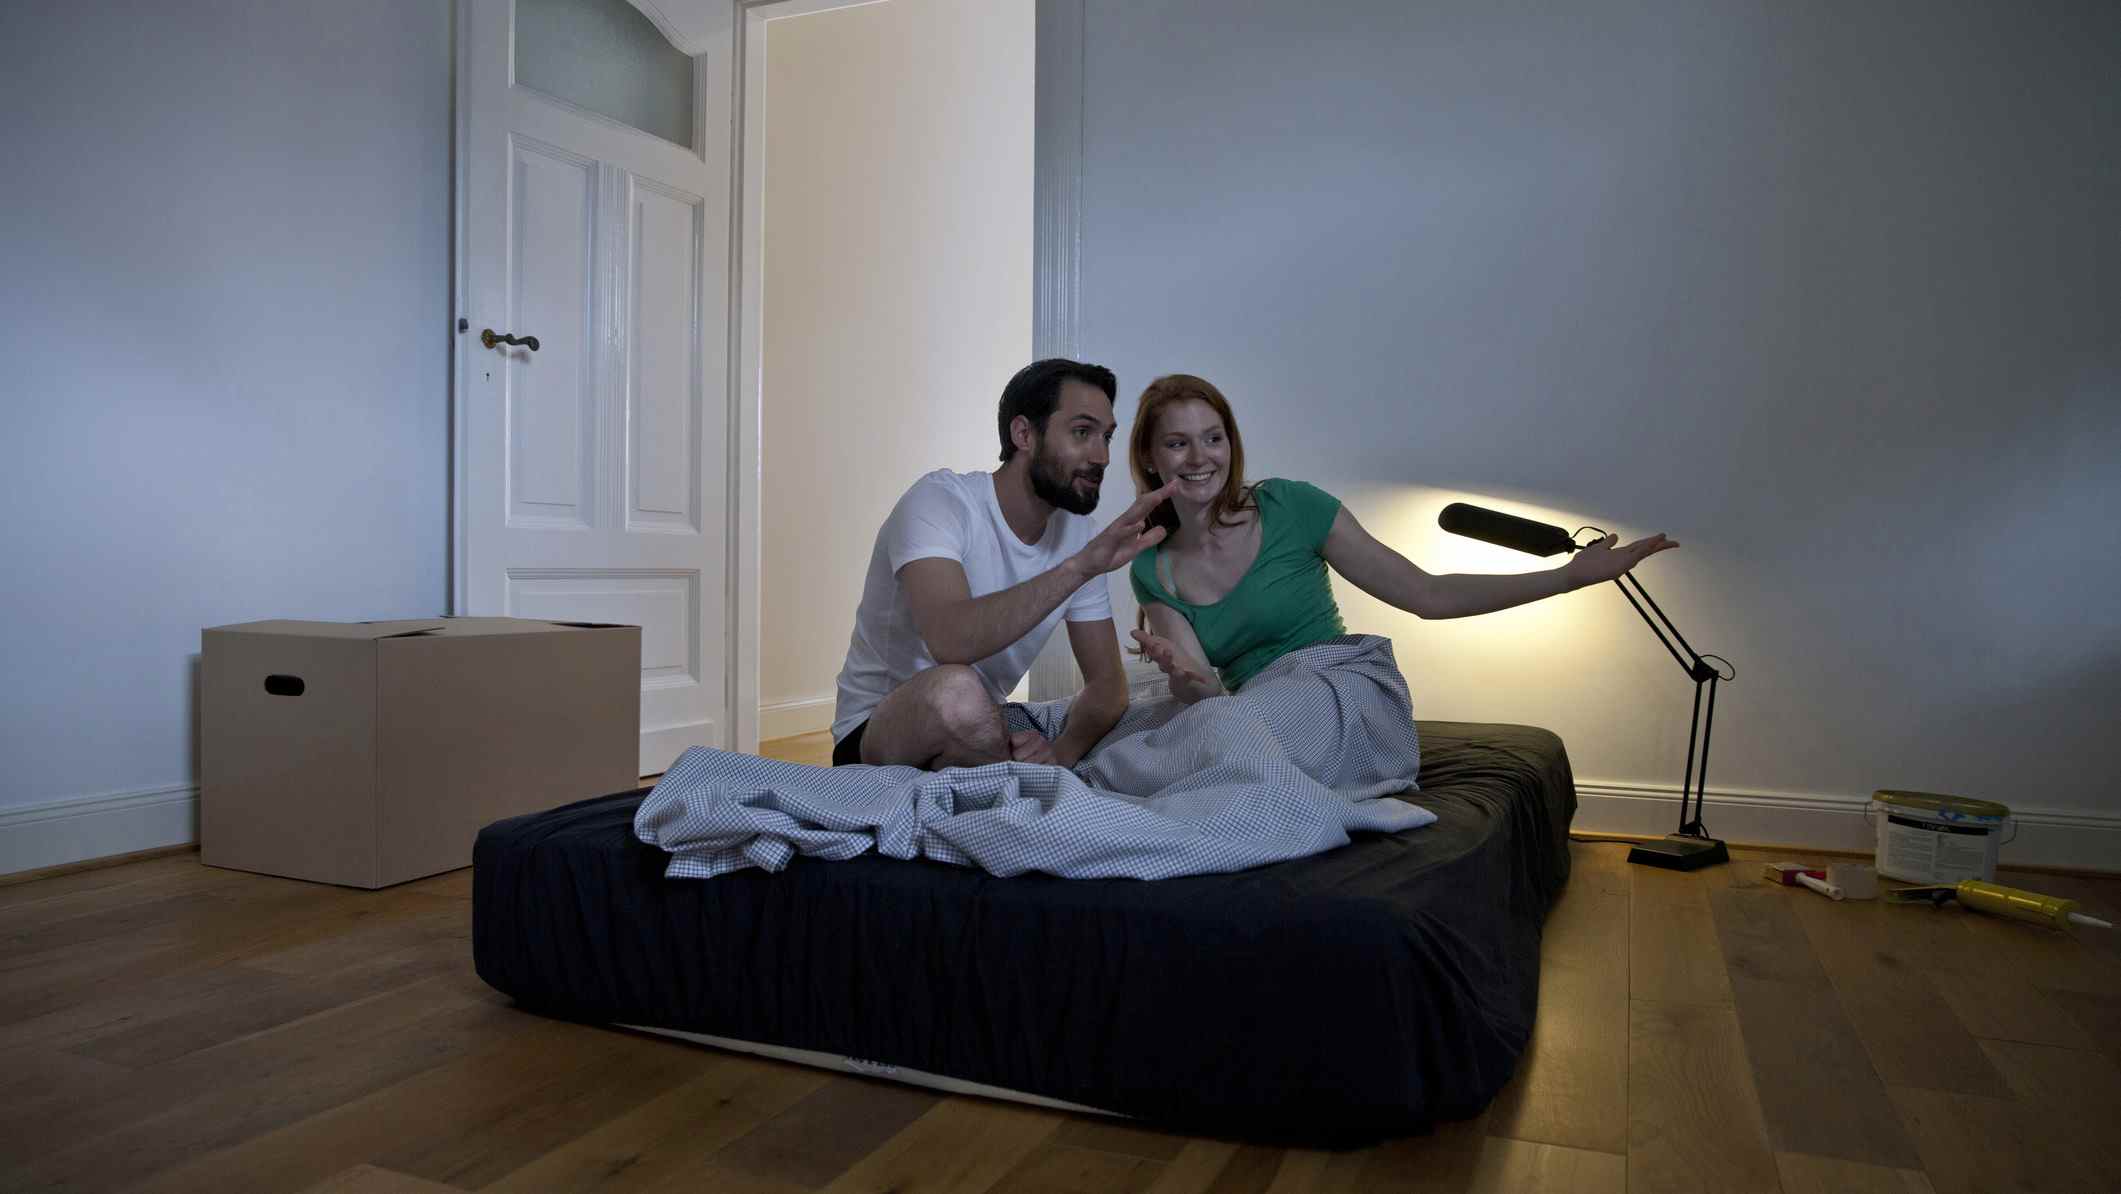 Un couple est assis sur un matelas recouvert de draps noirs dans une nouvelle chambre dans laquelle ils viennent d'emménager